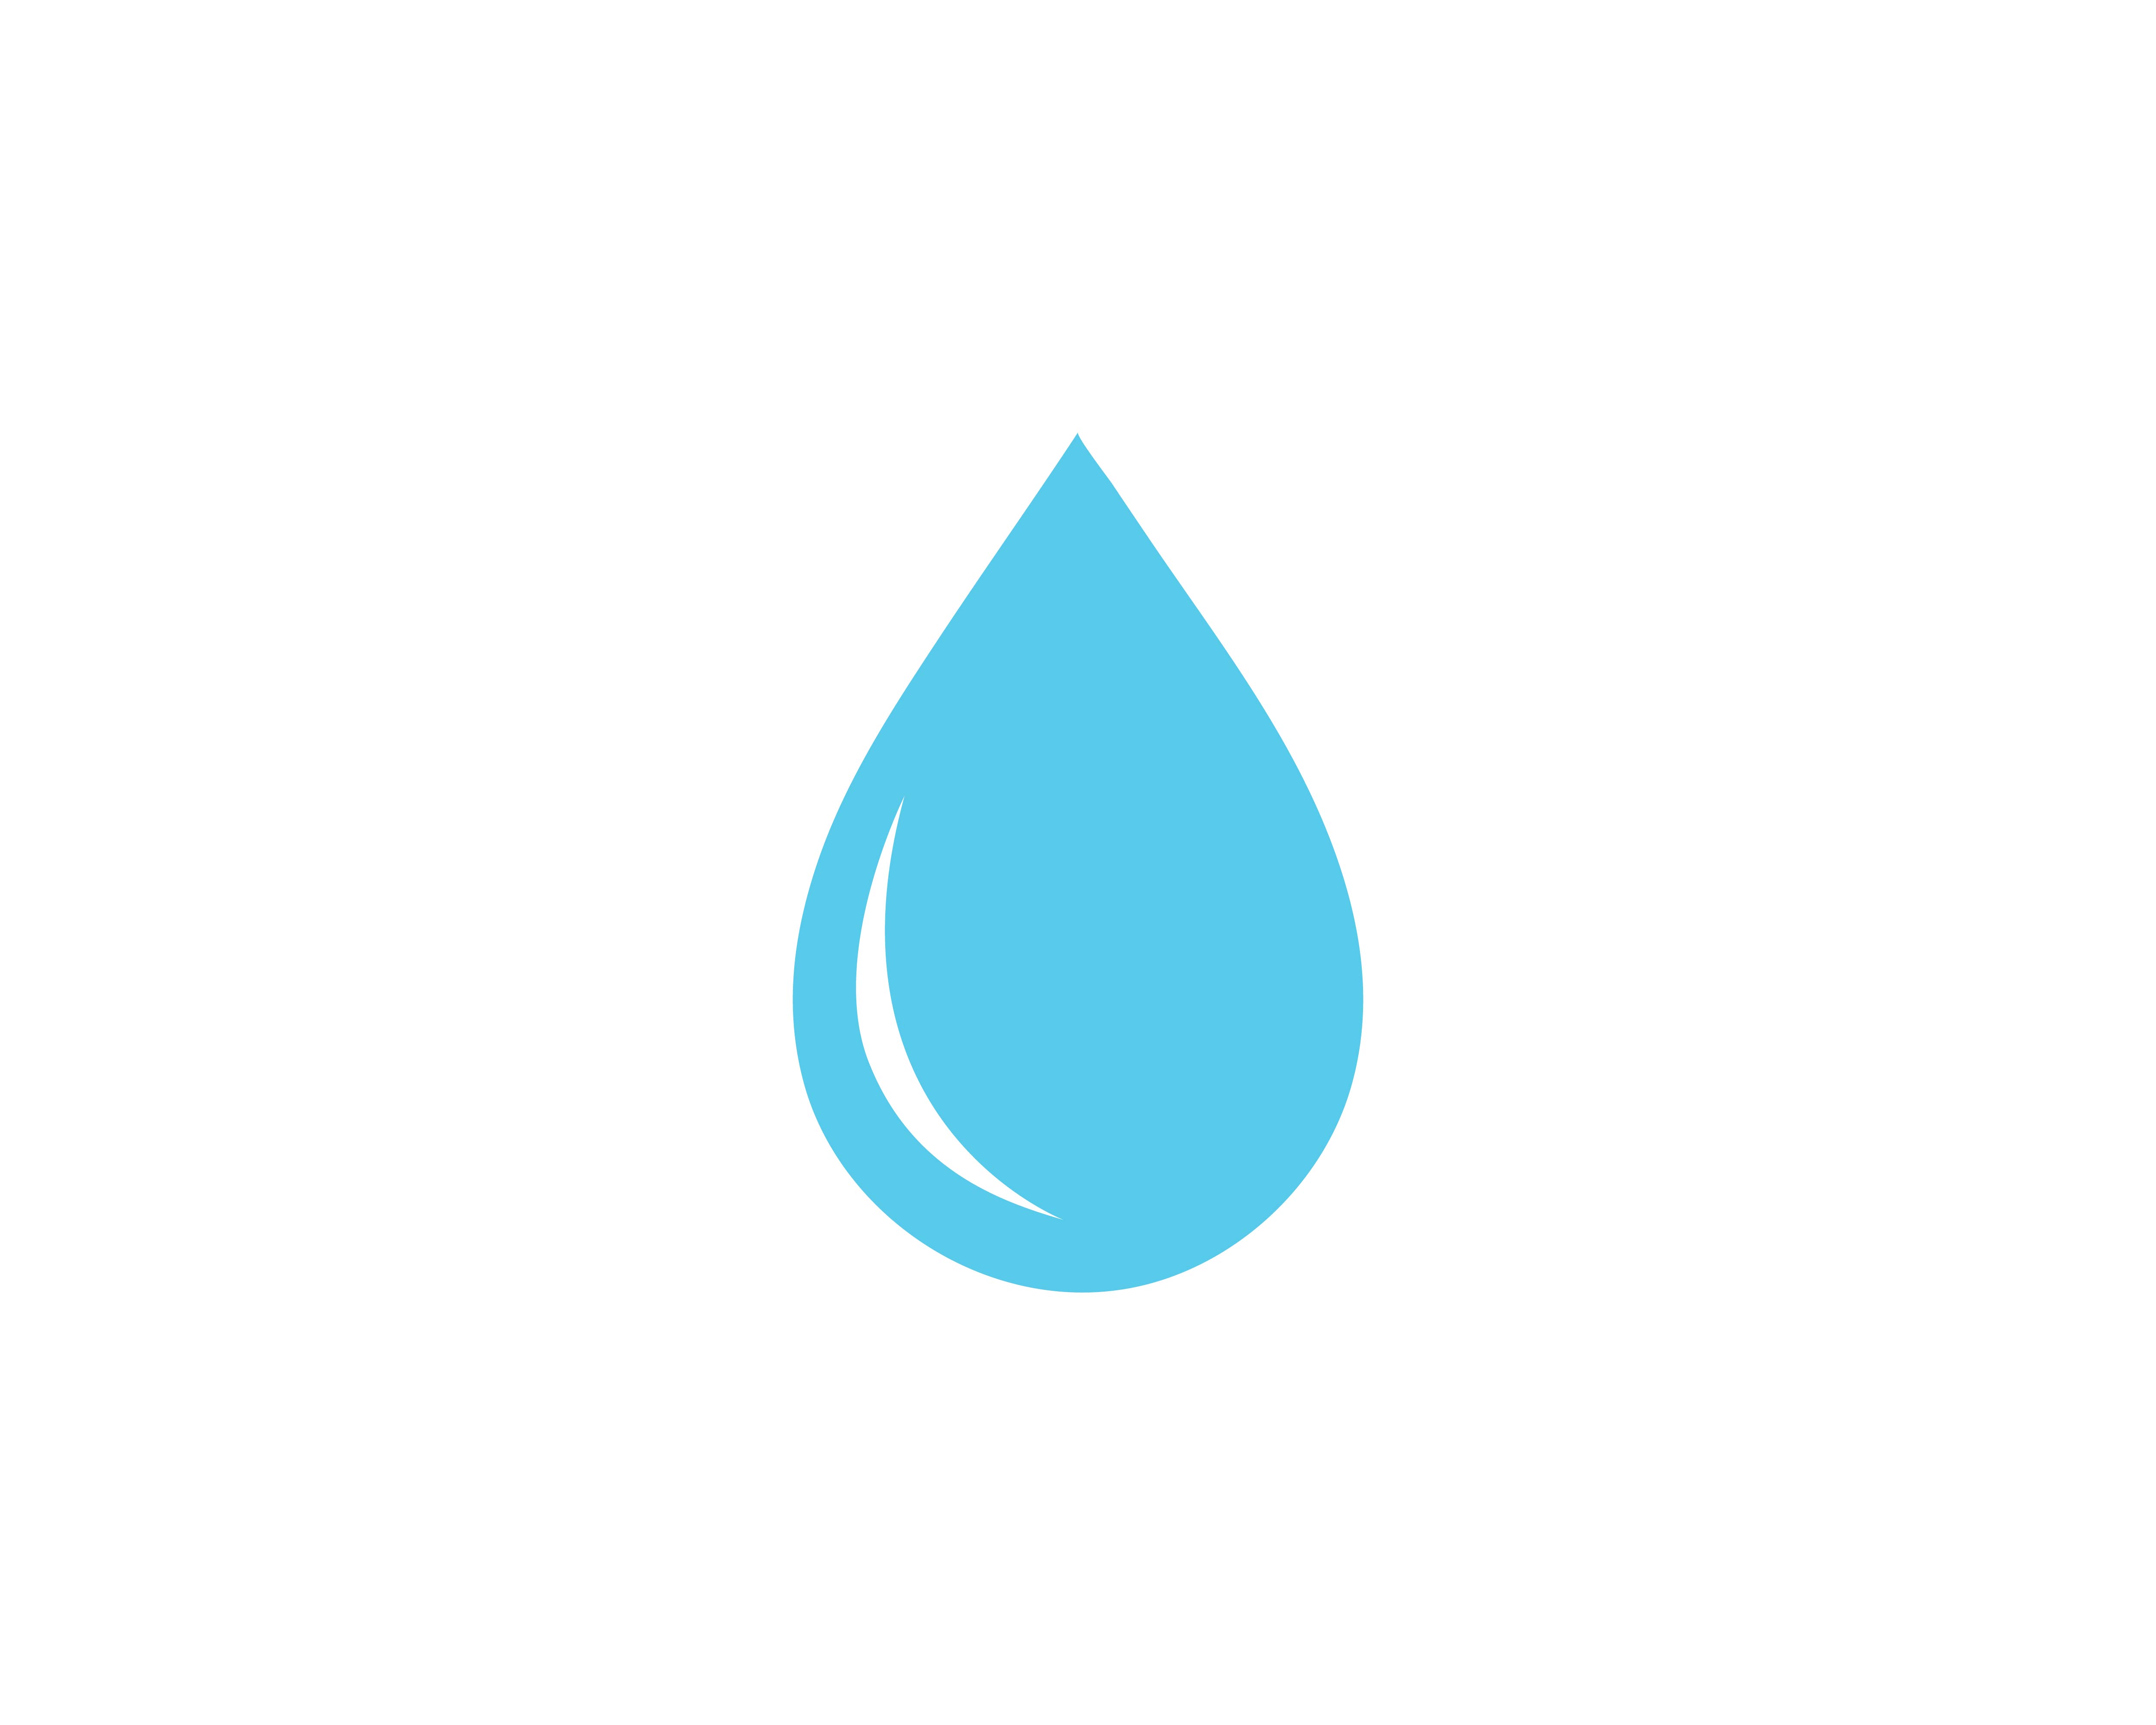  Goutte  d  eau  Logo Template vecteur Telecharger Vectoriel 